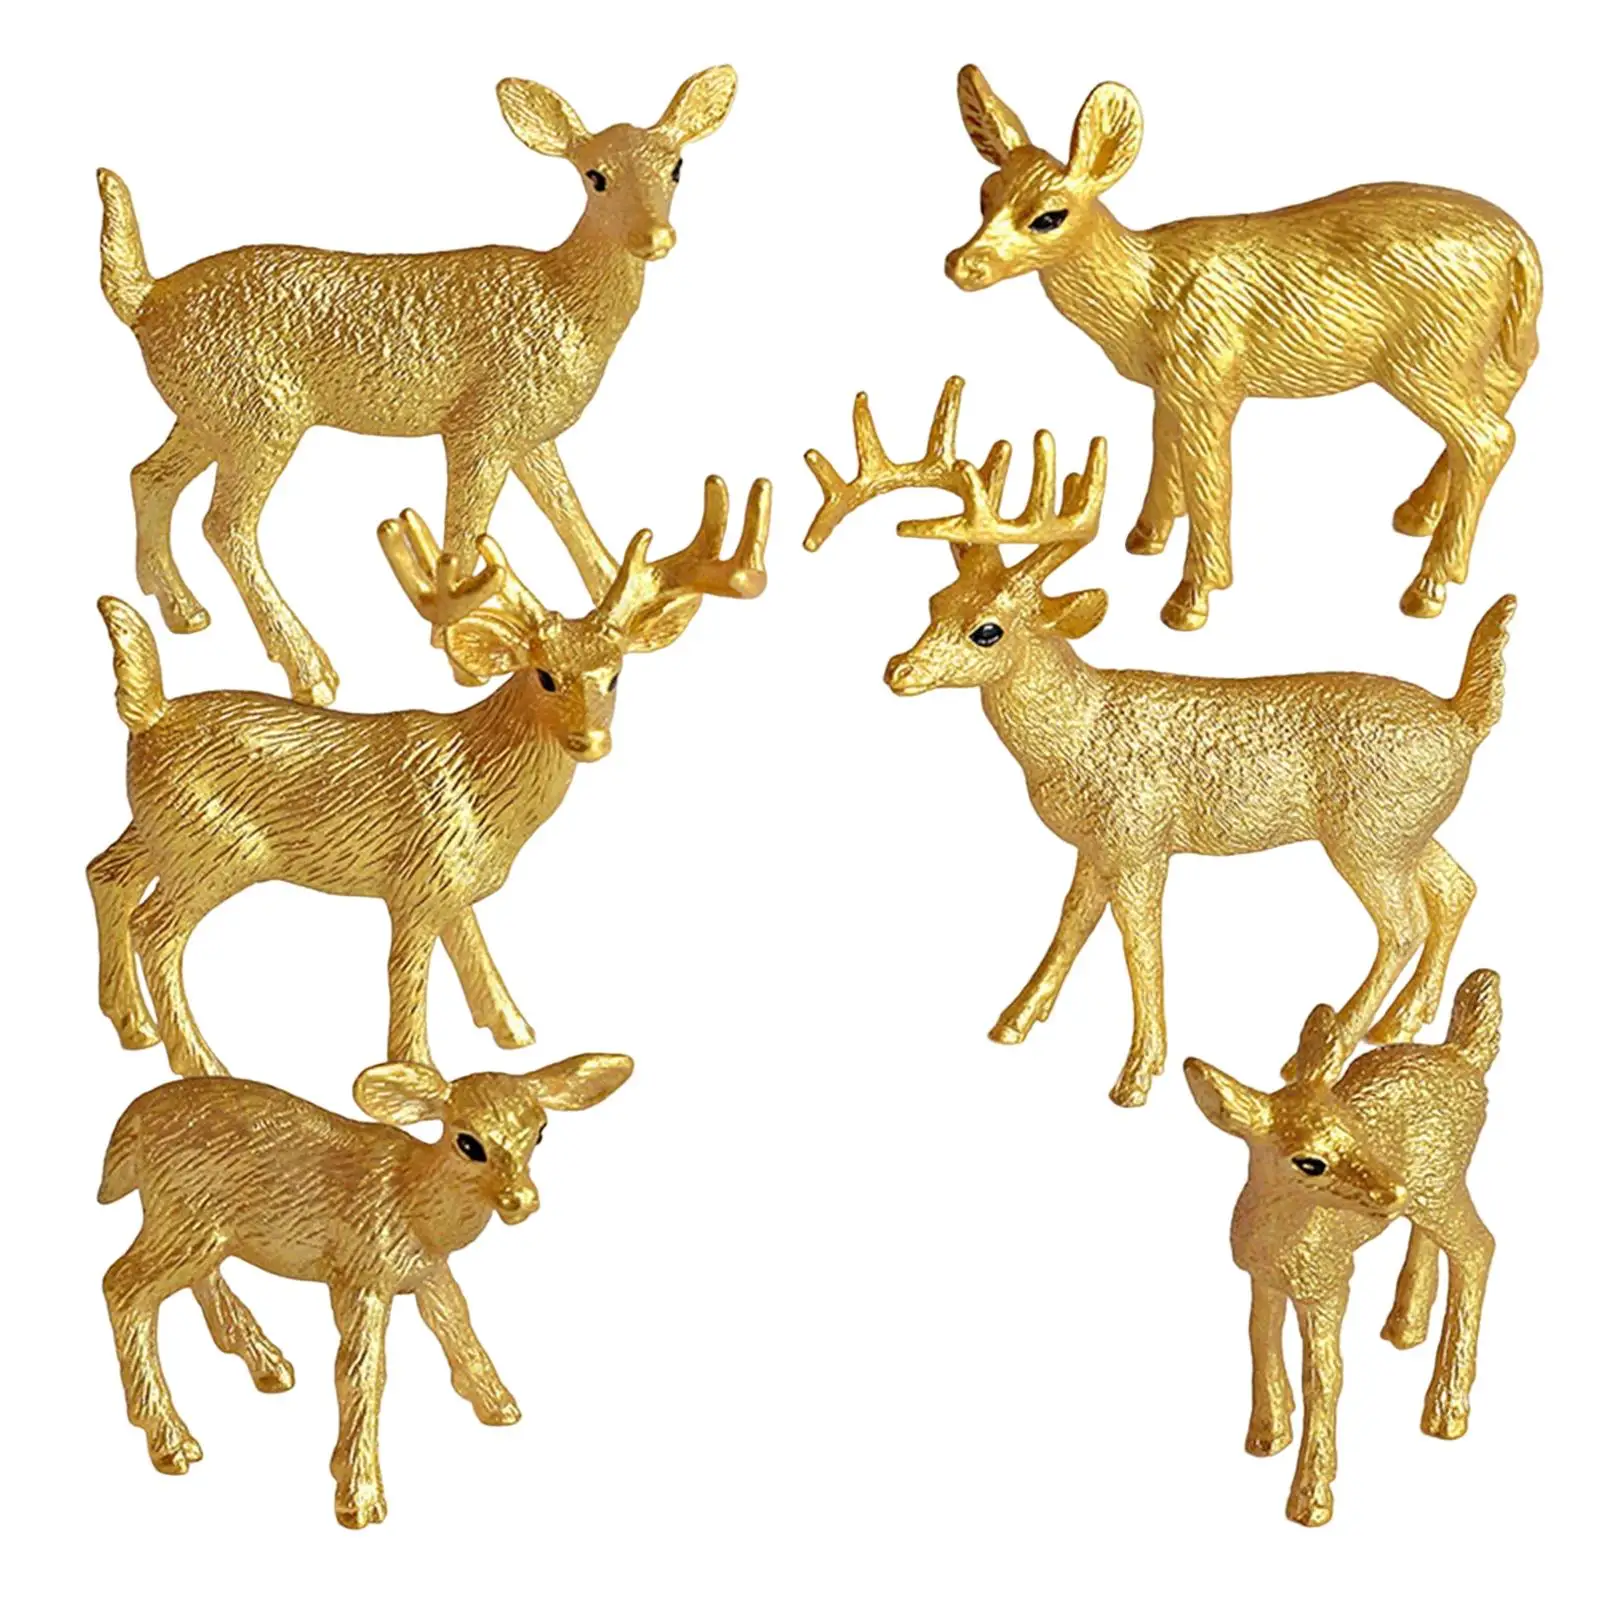 6 Pieces Miniature Deer Model for DIY Projects Props Kindergarten Girls Boys